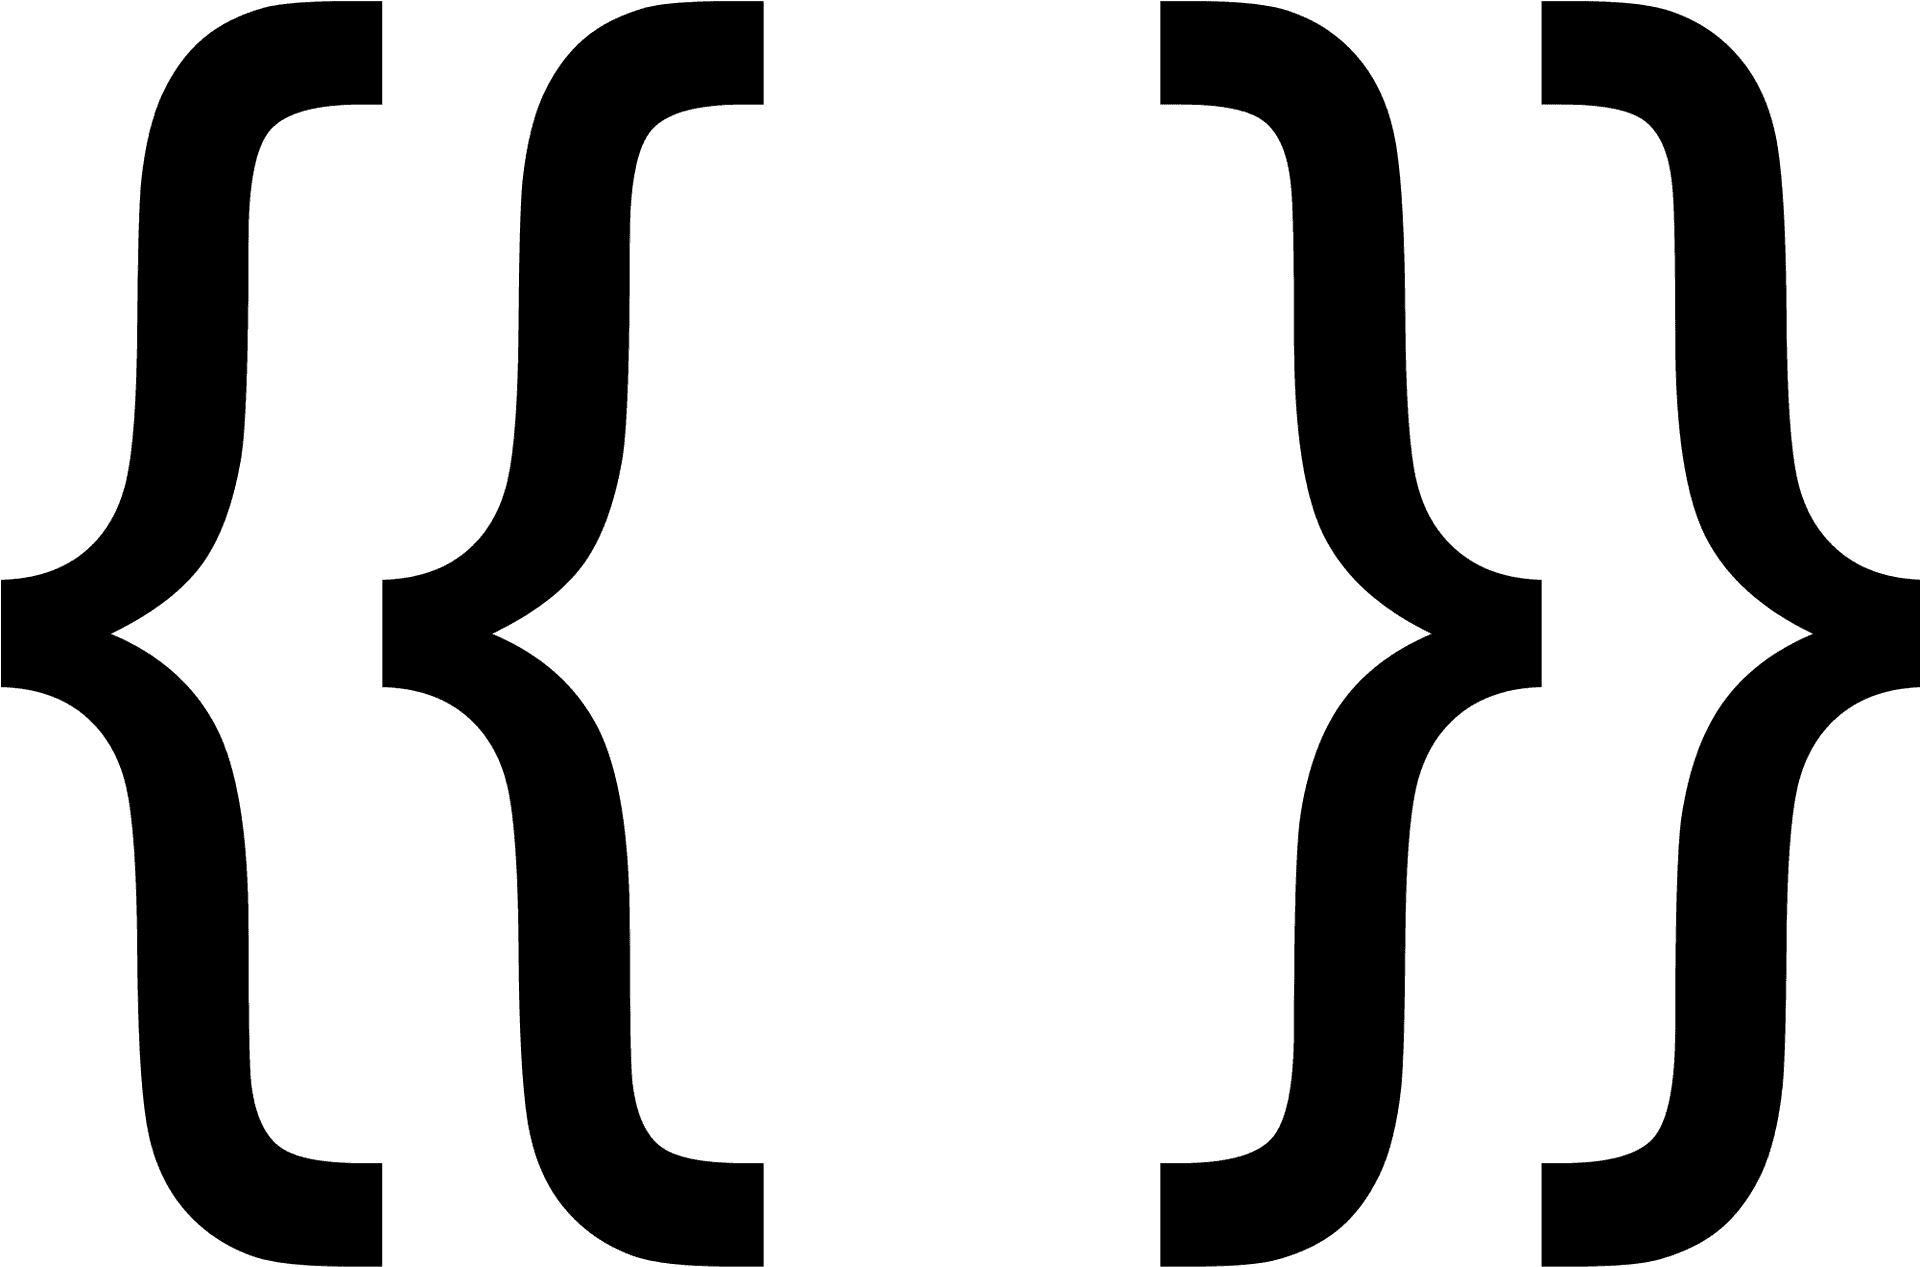 Curly Bracket Programming Symbol PNG image